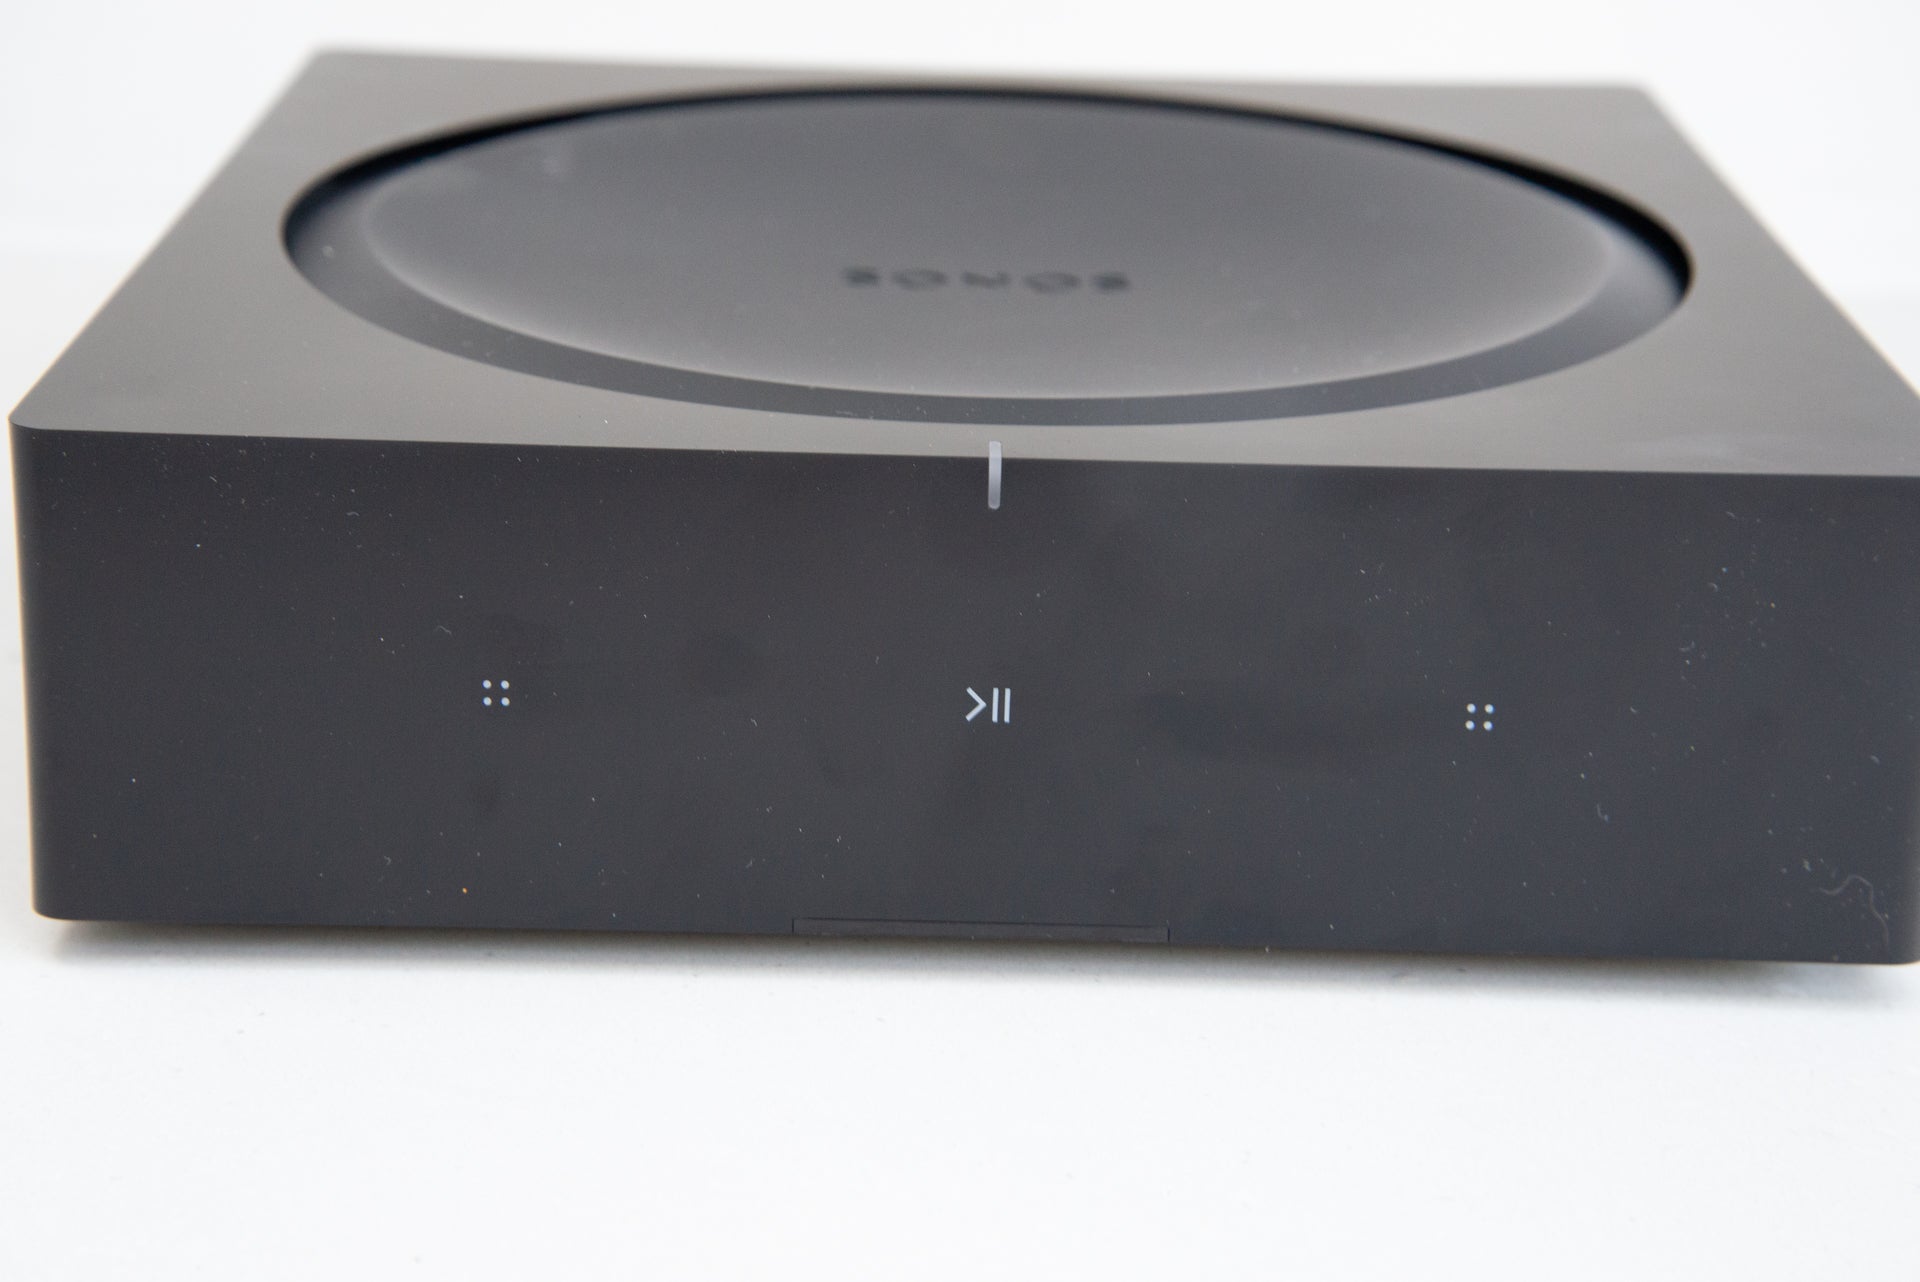 Amp Review - The best-sounding Sonos speaker